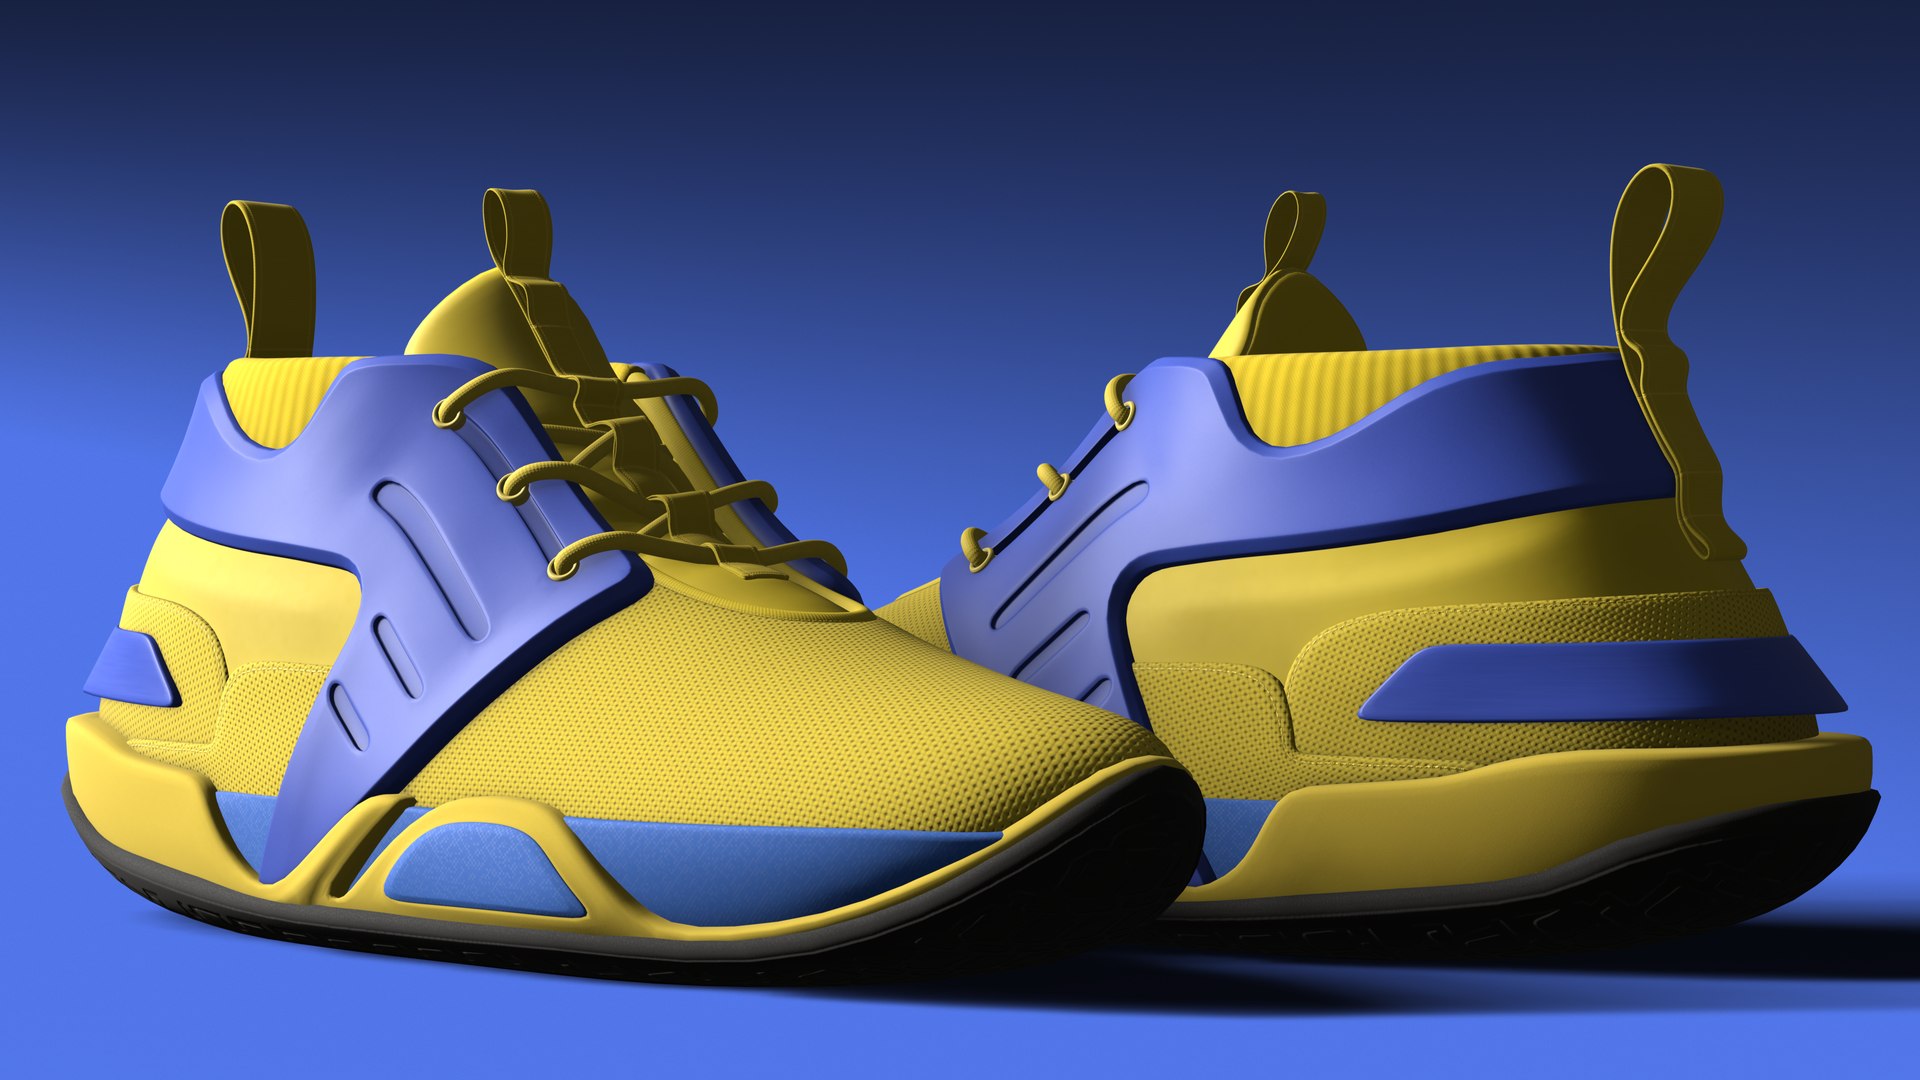 V3 sneakers car design inspired 3D model - TurboSquid 1996846